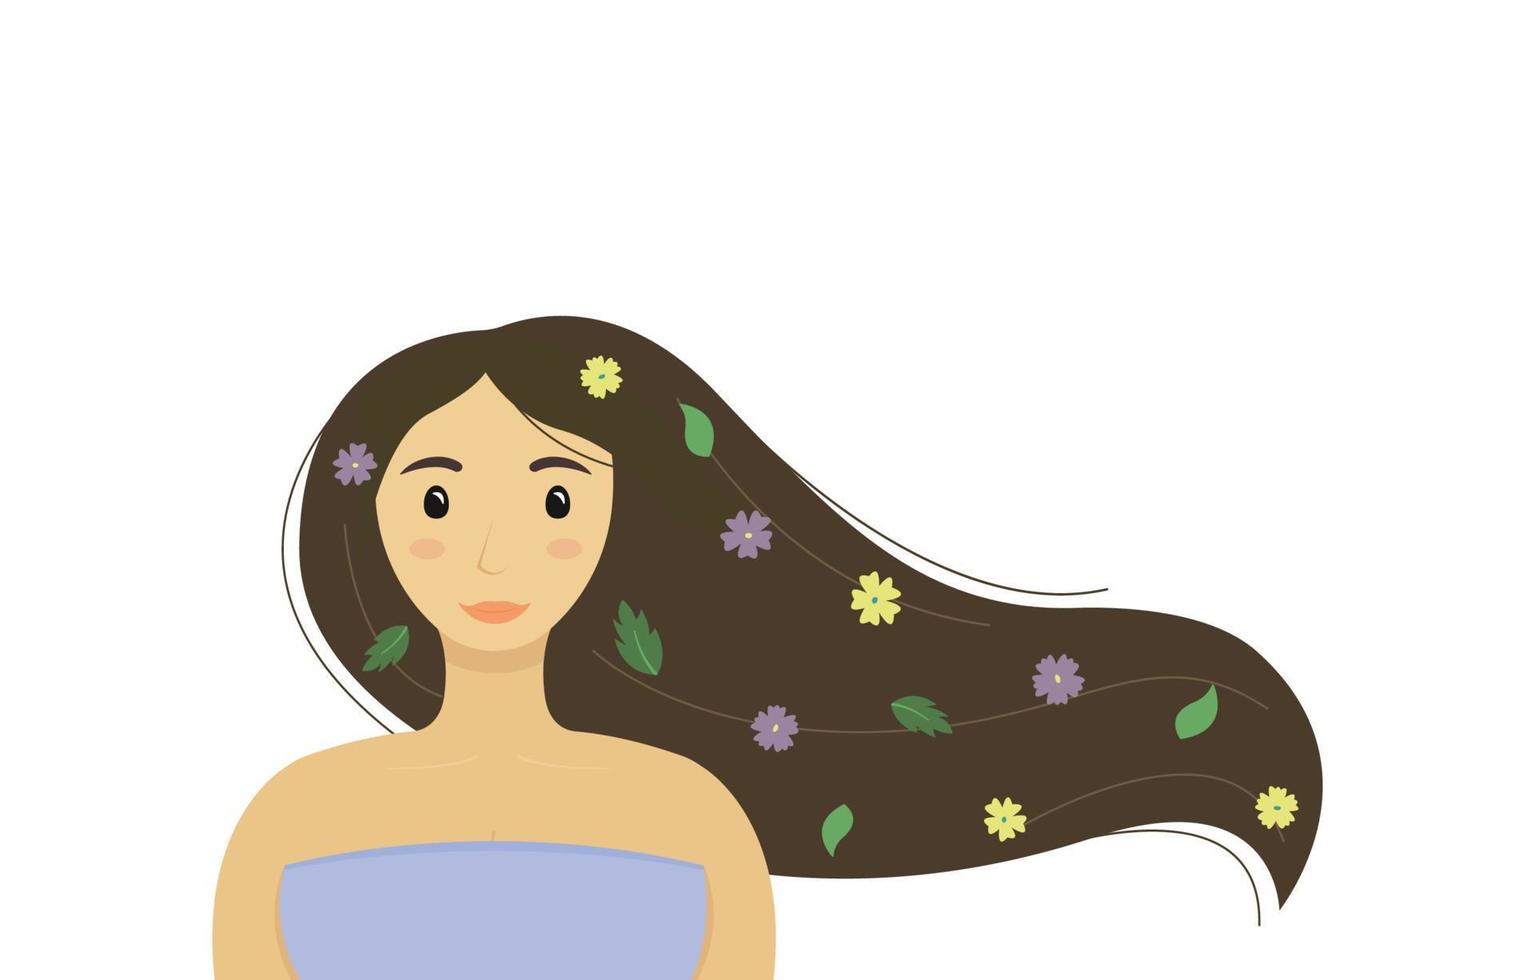 tierna mujer joven con cabello largo mirando de frente. cabello ondeando al viento, flores y hojas en rizos. morena tranquila con una mirada abierta. ilustración vectorial plana vector